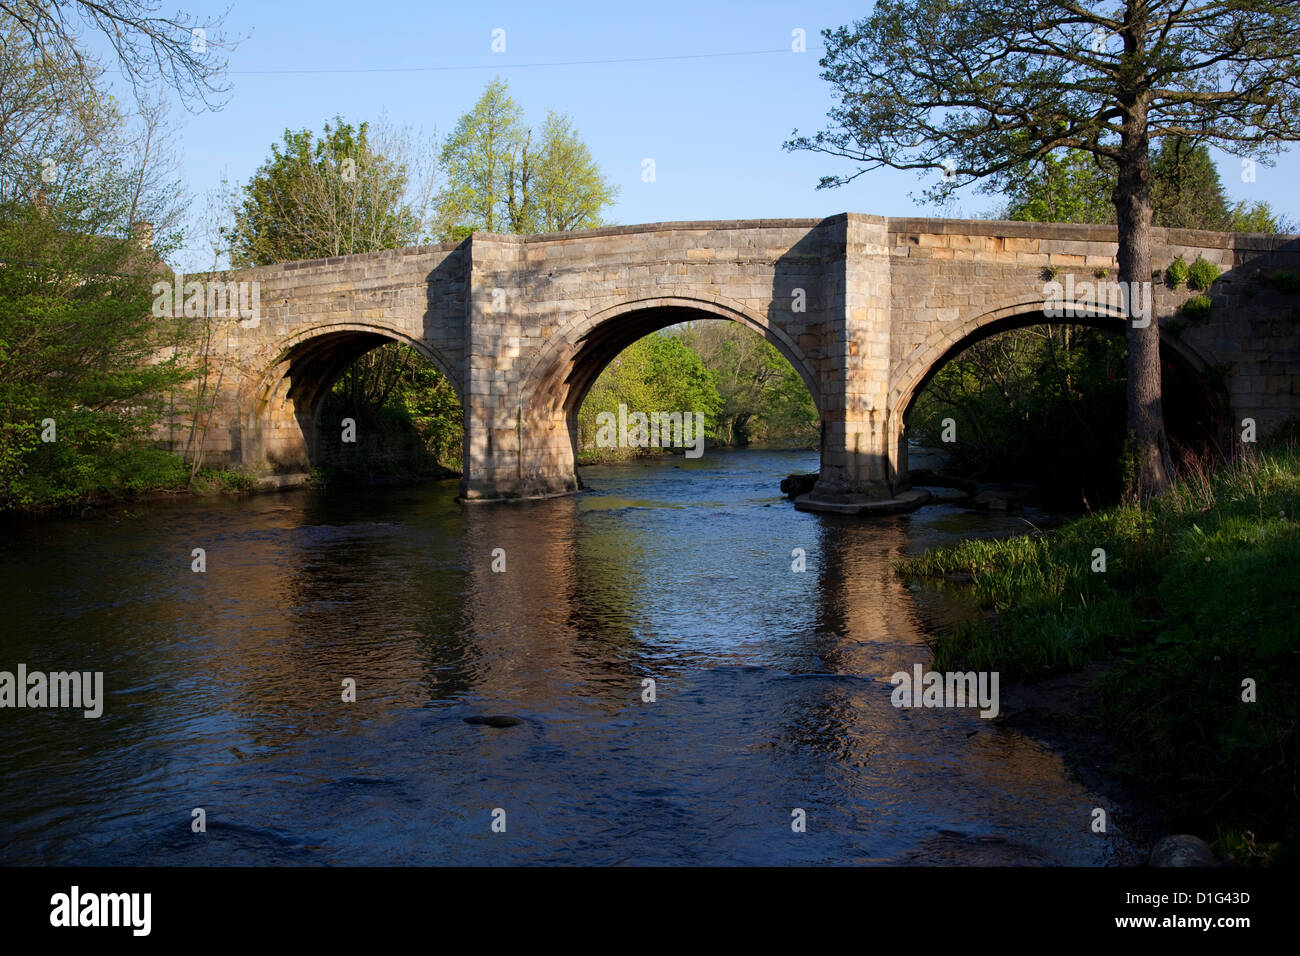 Pont en arc de pierre sur la rivière Derwent, Buxton, Derbyshire, Angleterre, Royaume-Uni, Europe Banque D'Images